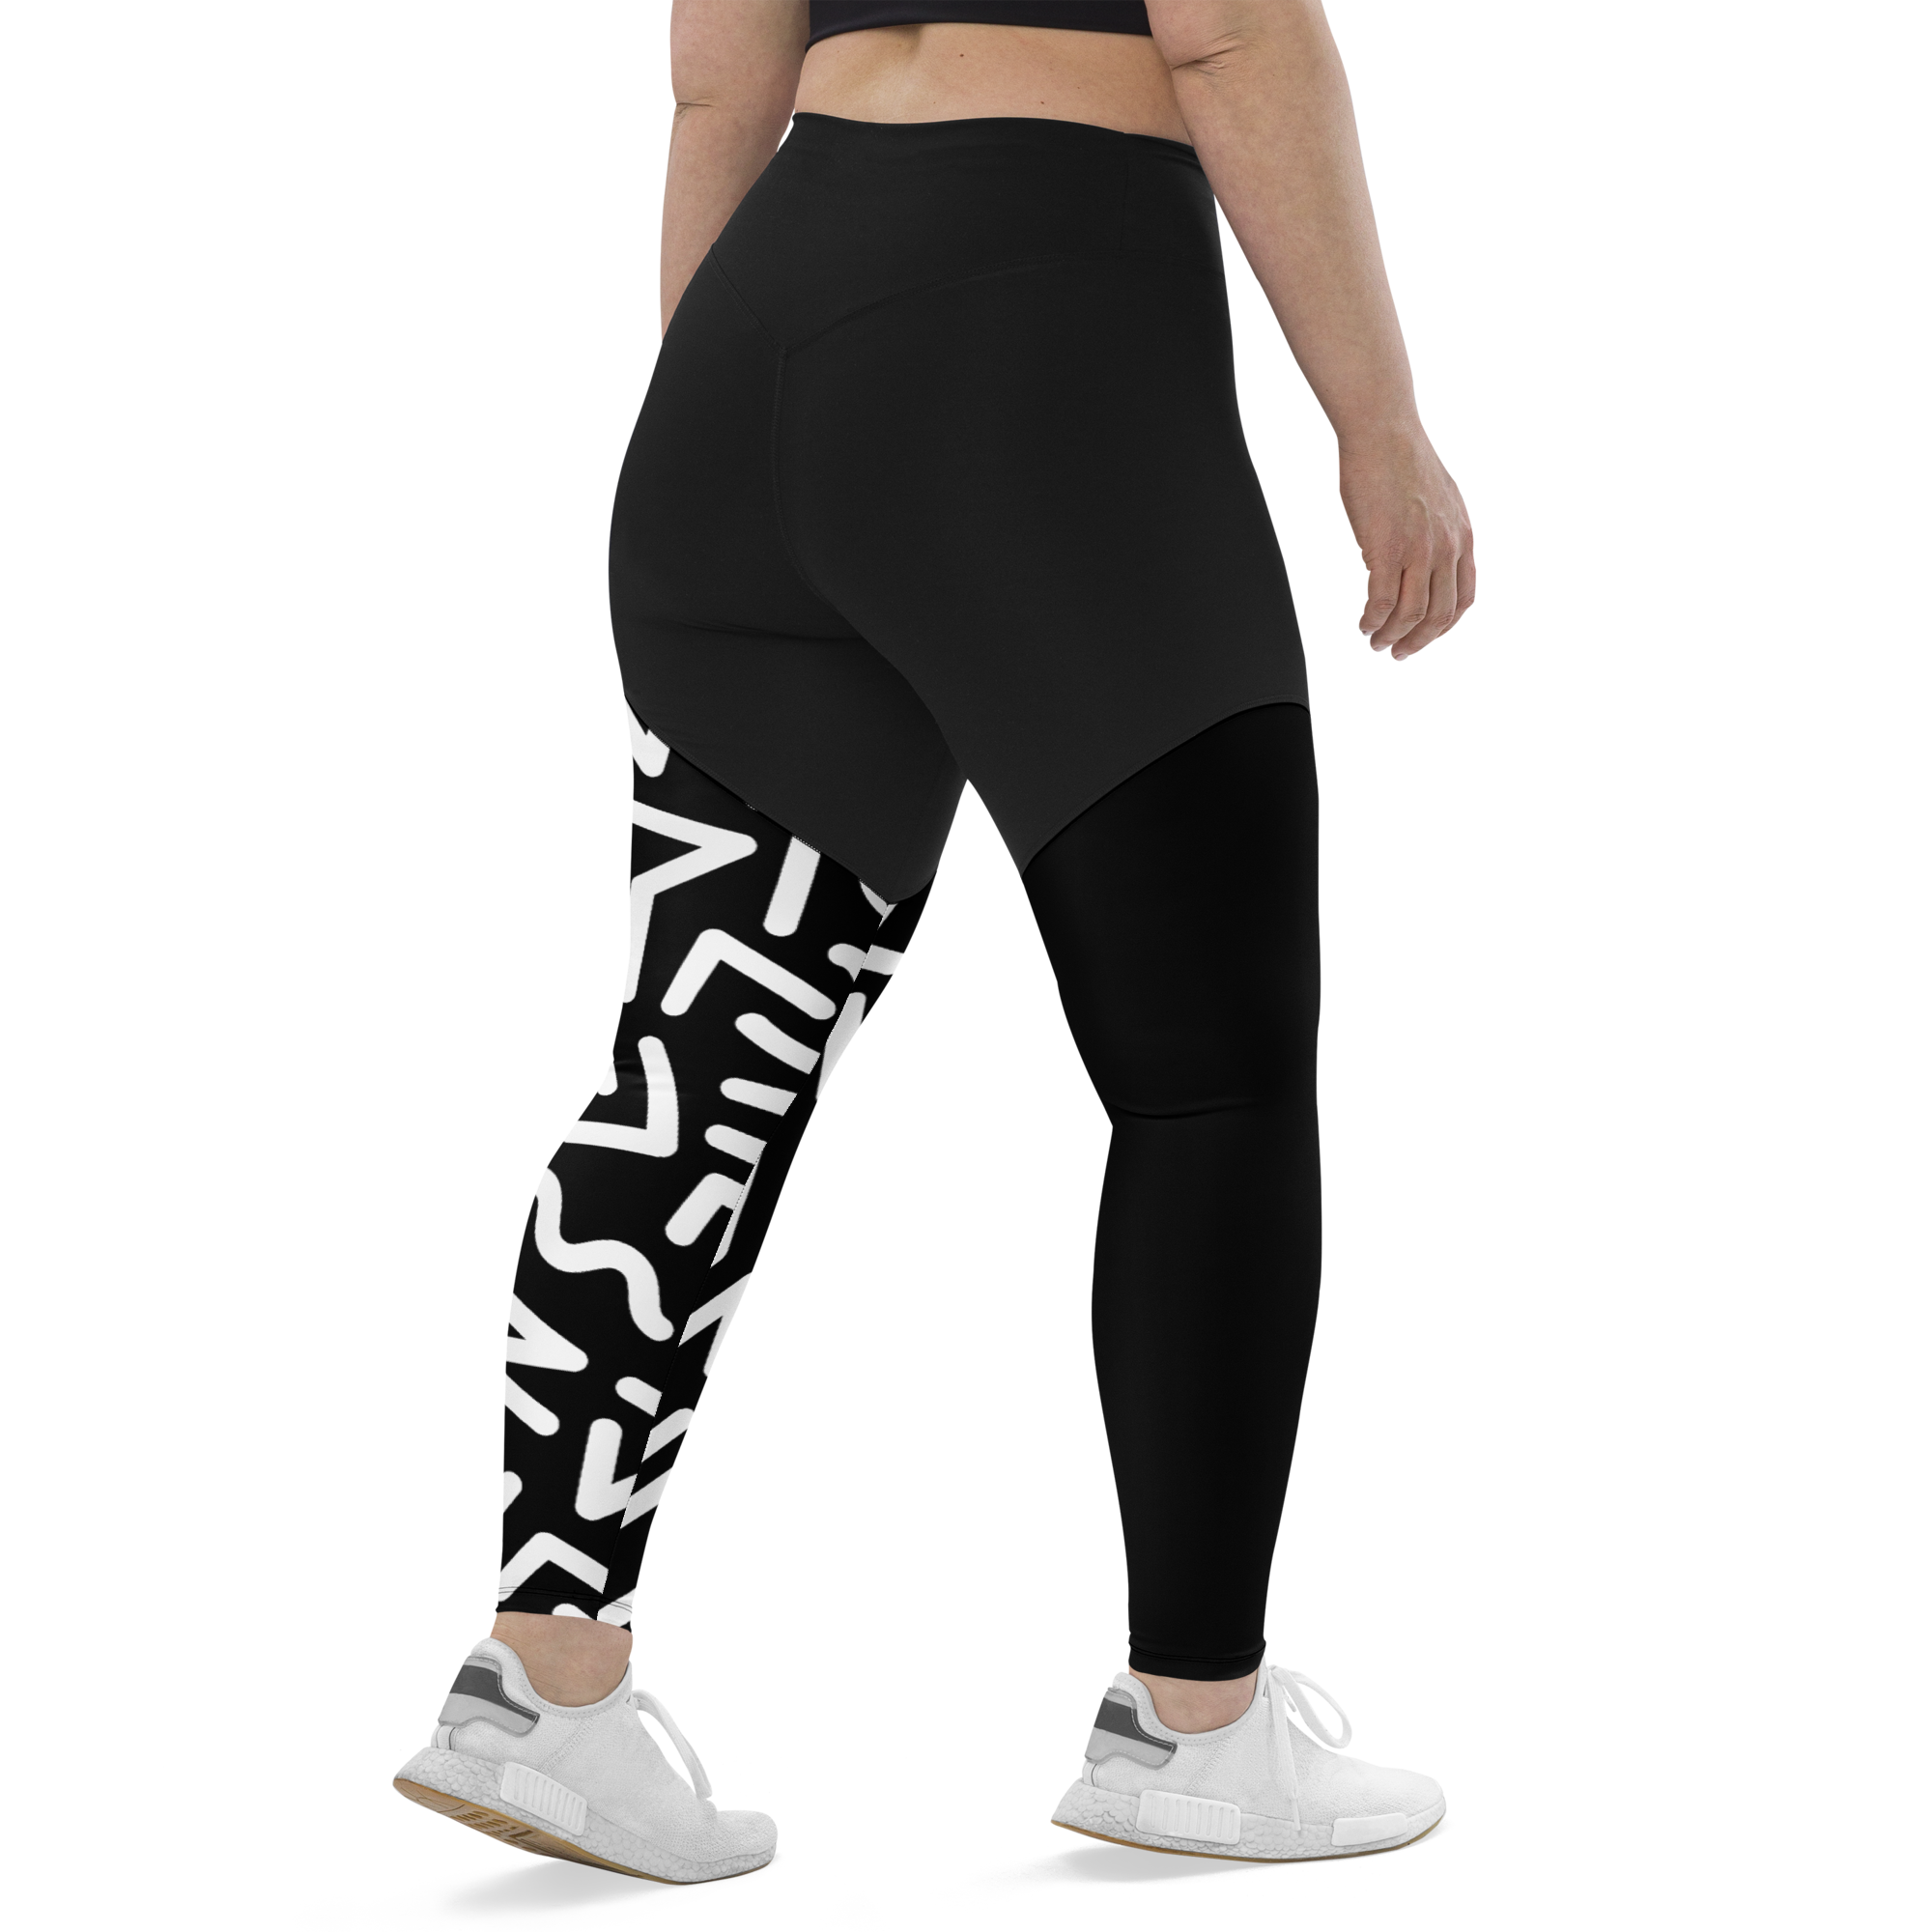 High Quality Women Yoga Pants Leggings transparent stripe workout gym  running legging sports seluar panjang wanita sukan | Shopee Malaysia